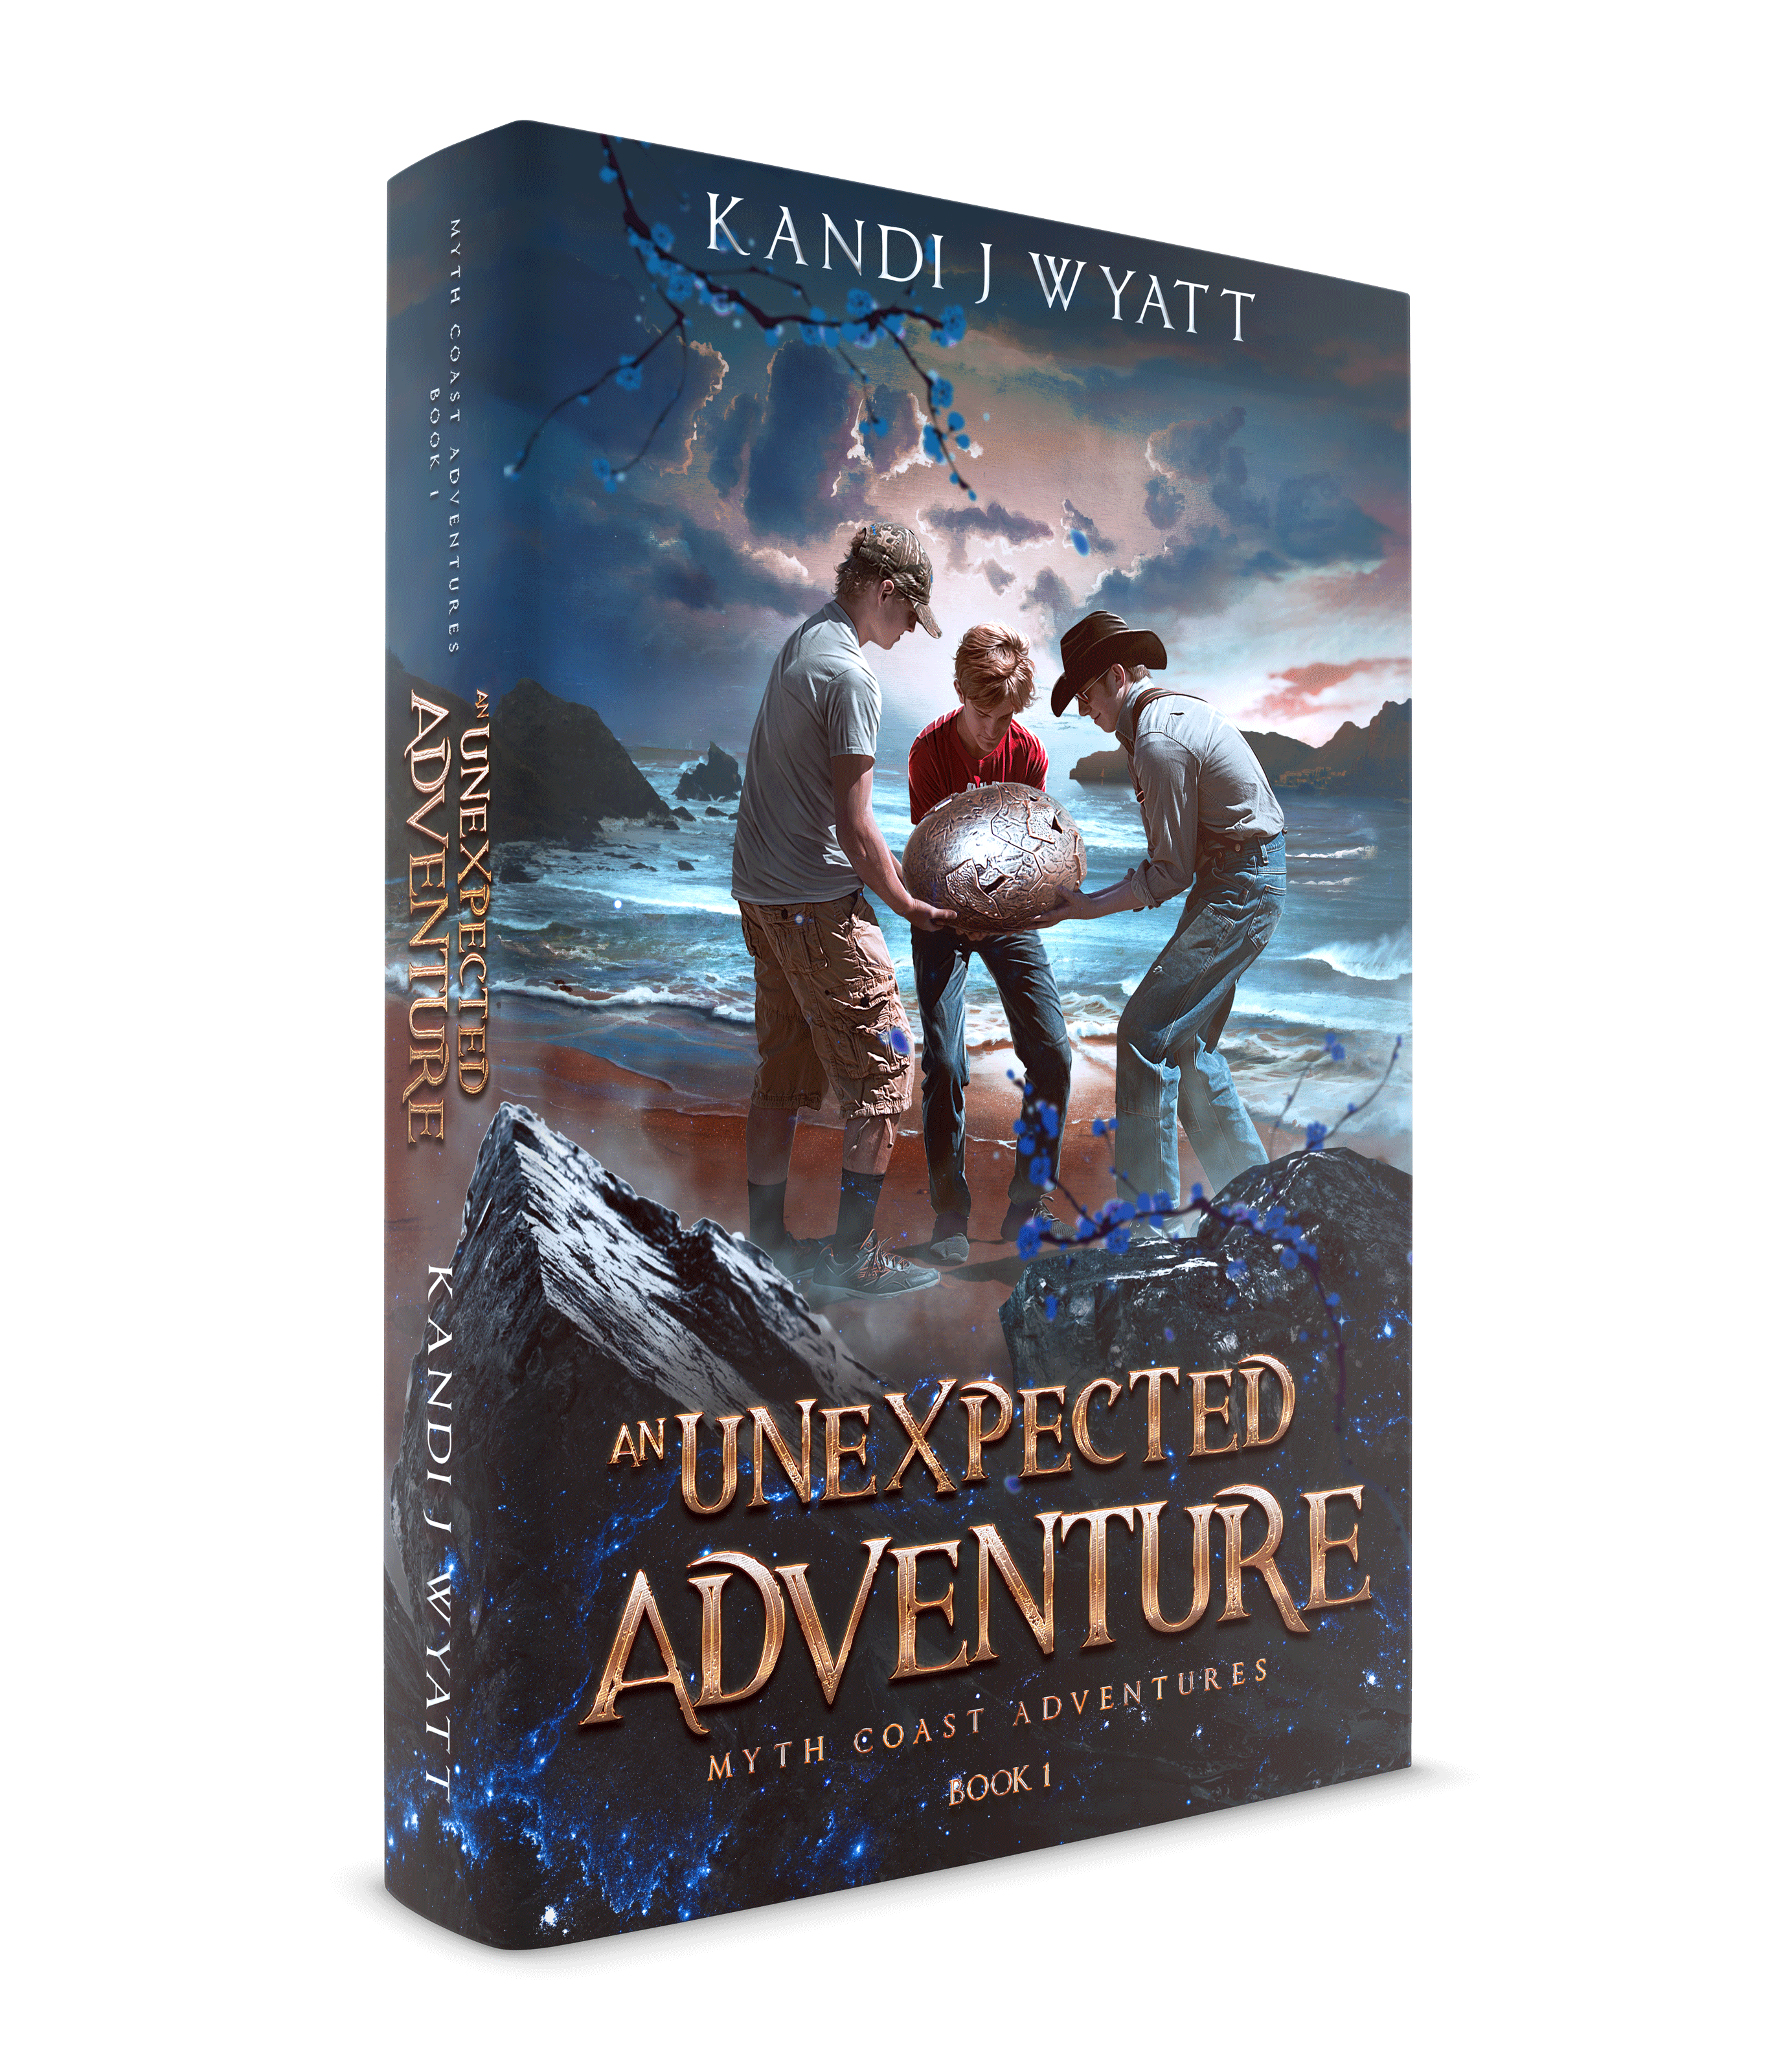 An Unexpected Adventure – Author Kandi J Wyatt